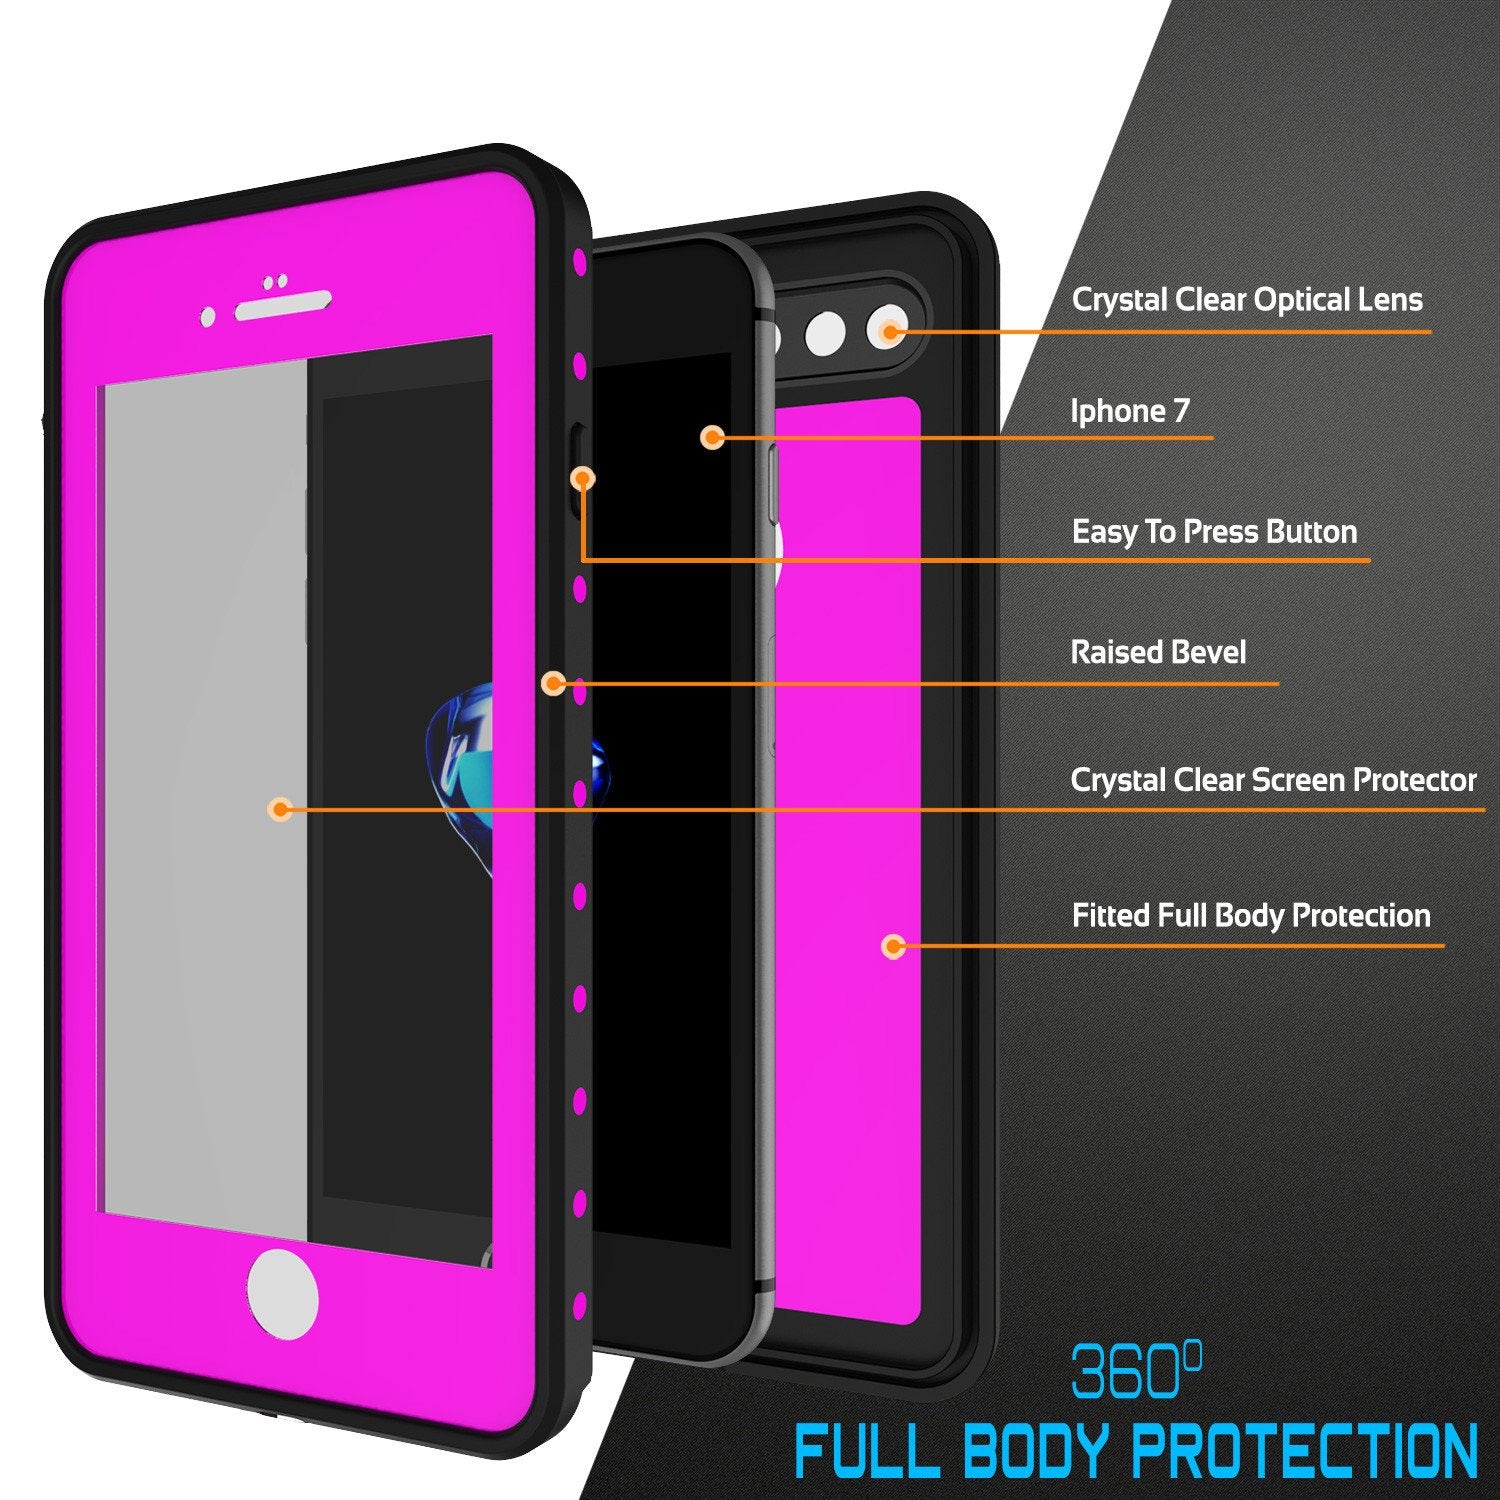 iPhone 7s Plus Waterproof Case, Punkcase [Pink] [StudStar Series] [Slim Fit] [IP68 Certified] [Shockproof] [Dirtproof] [Snowproof] Armor Cover for Apple iPhone 7 Plus & 7s +